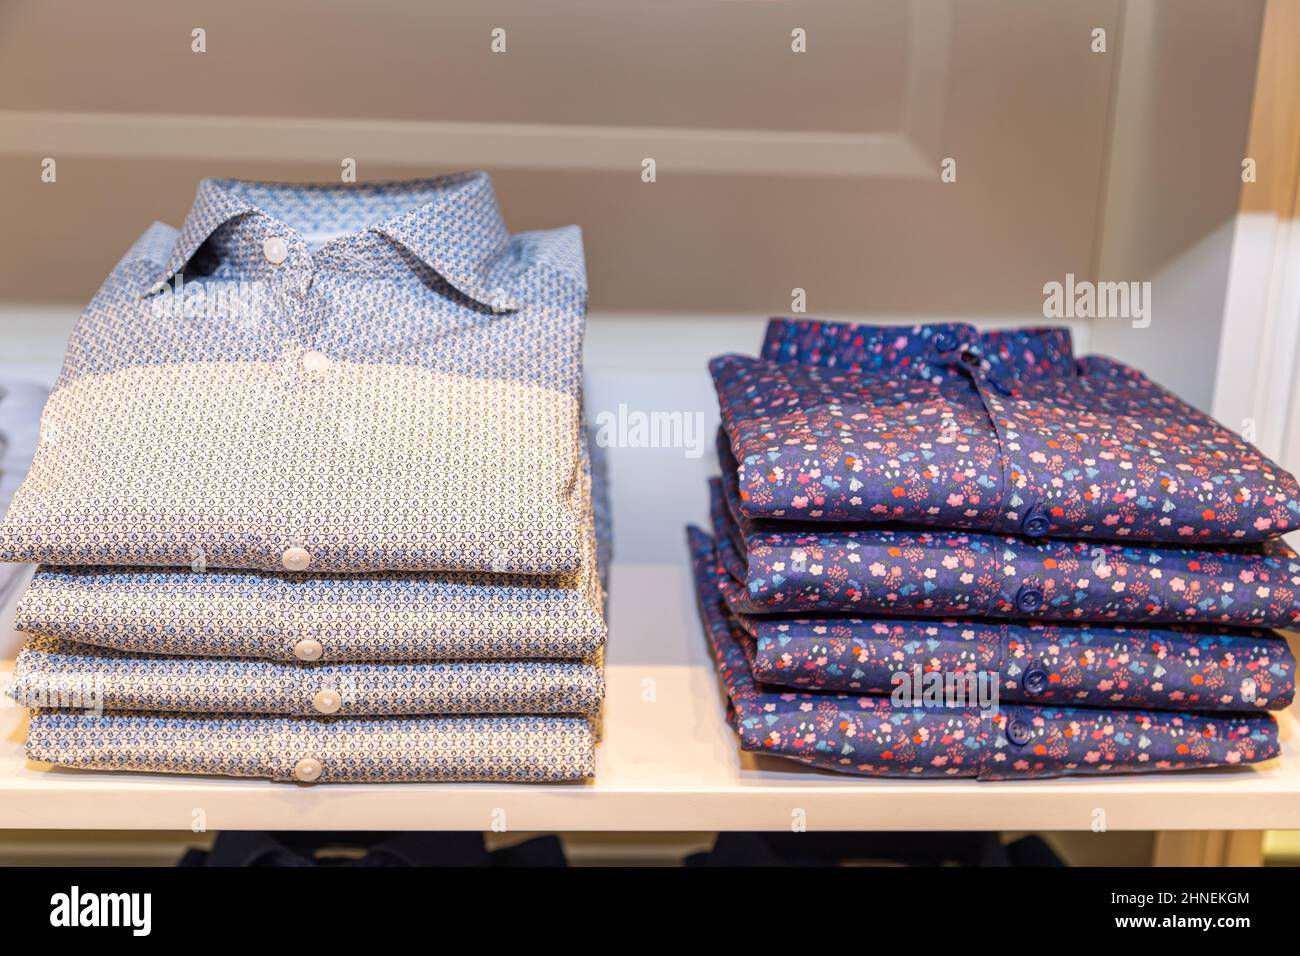 Une pile de chemises bleutées sur une étagère Banque D'Images